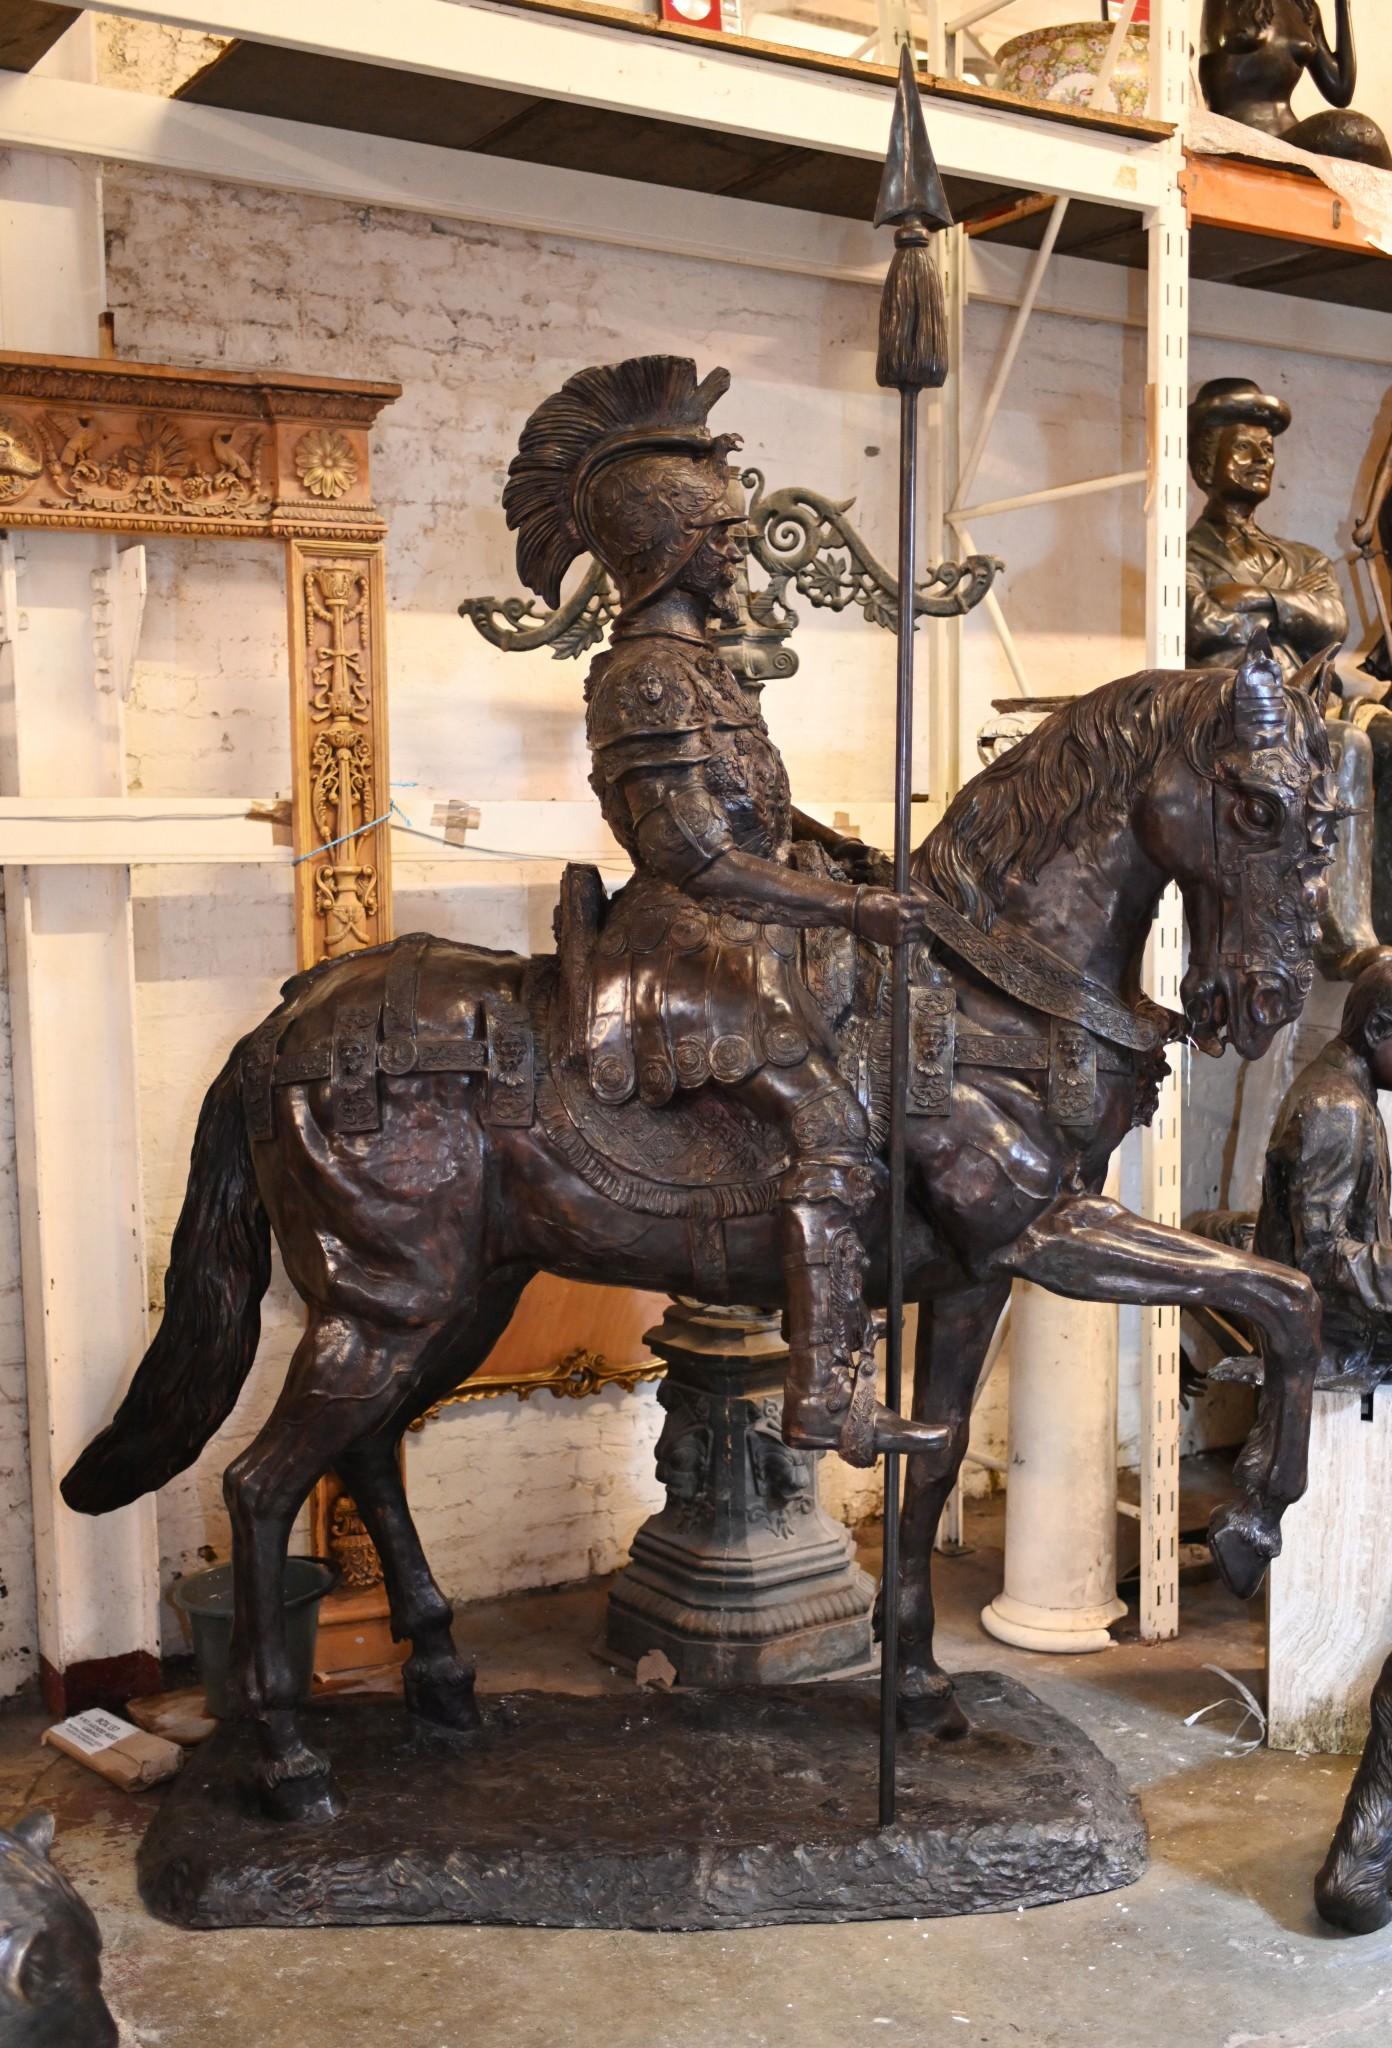 Vous avez toujours eu besoin d'un cheval en bronze grandeur nature surmonté d'un gladiateur romain assis, n'est-ce pas ?
Quelle œuvre d'art étonnante, unique et colossale !
Pièce fantastique et unique - véritable pièce de collection
Bien sûr, comme